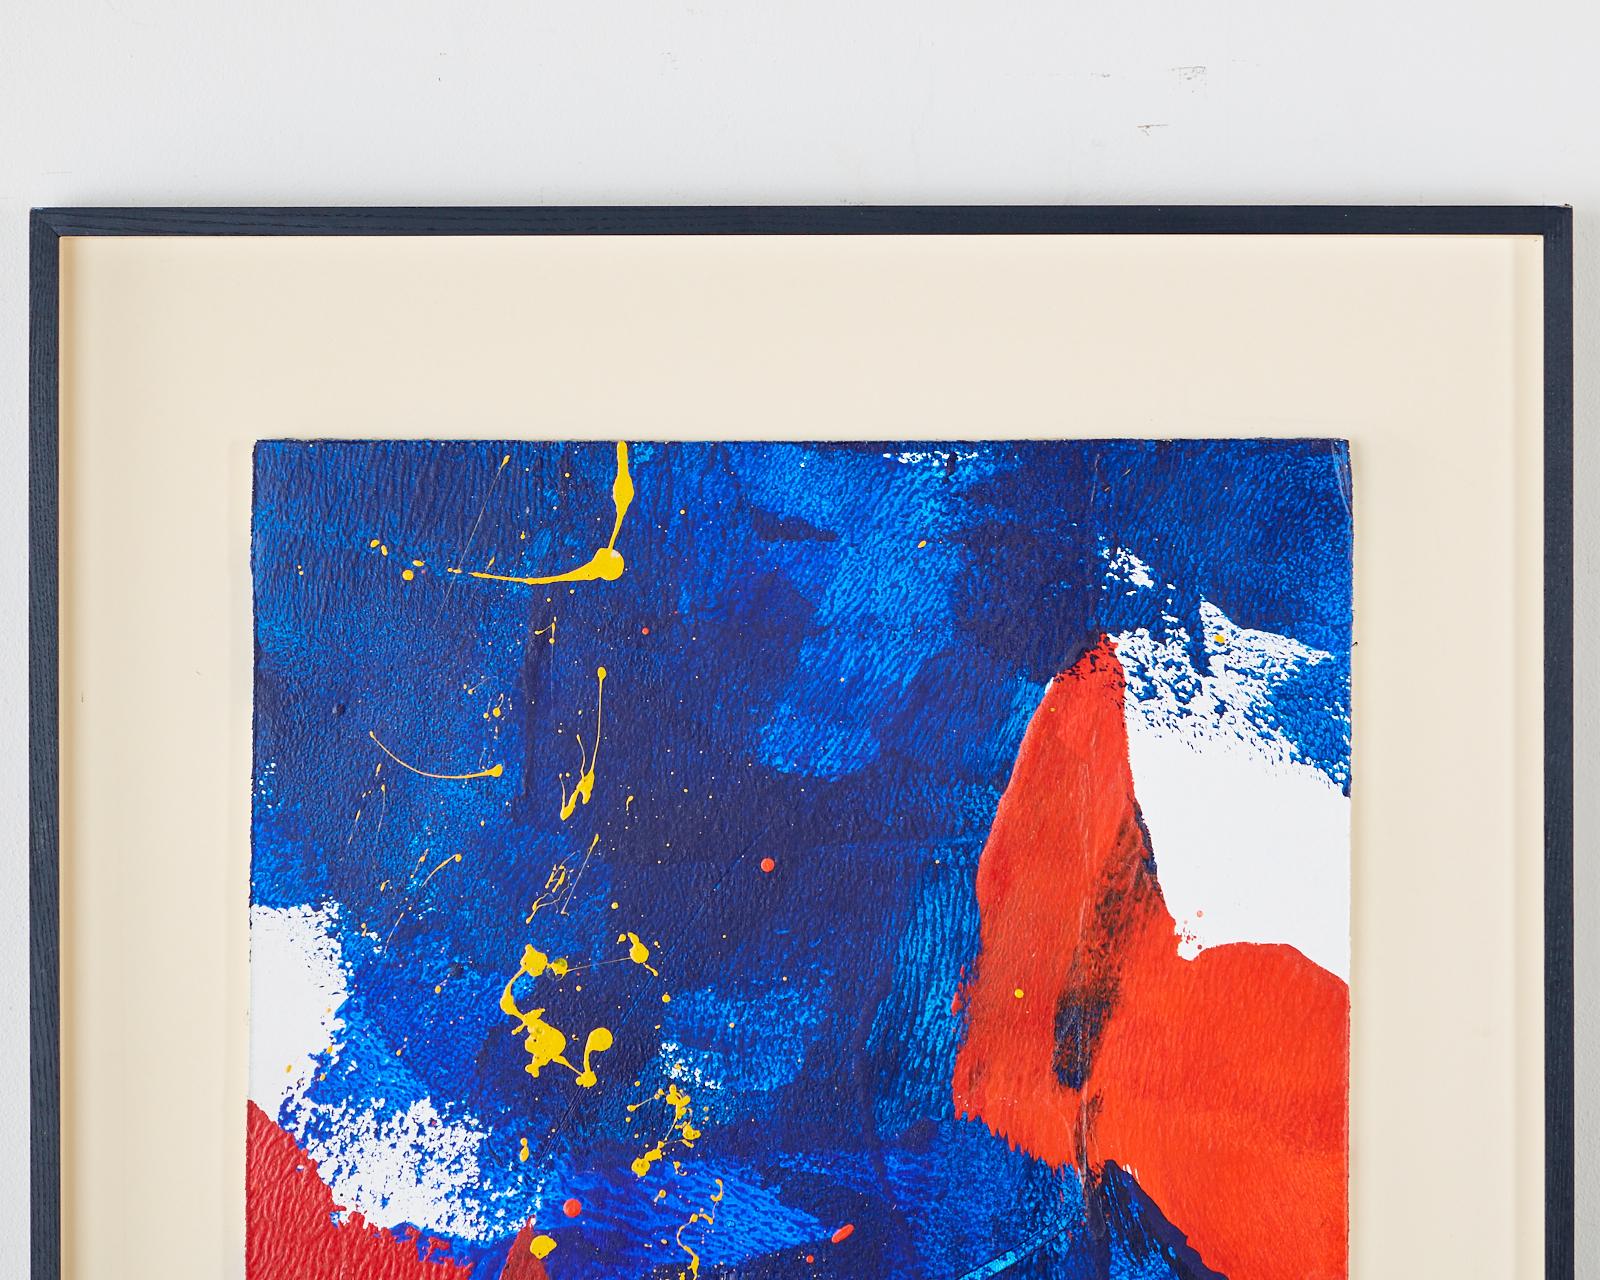 Captivante peinture acrylique abstraite sur carton de Marguerite Saegesser (Suisse 1923-2011) montée dans un cadre en bois ébène. Signé au verso au crayon. Affiche des couleurs vives et de l'énergie. Saegesser était un résident de longue date de